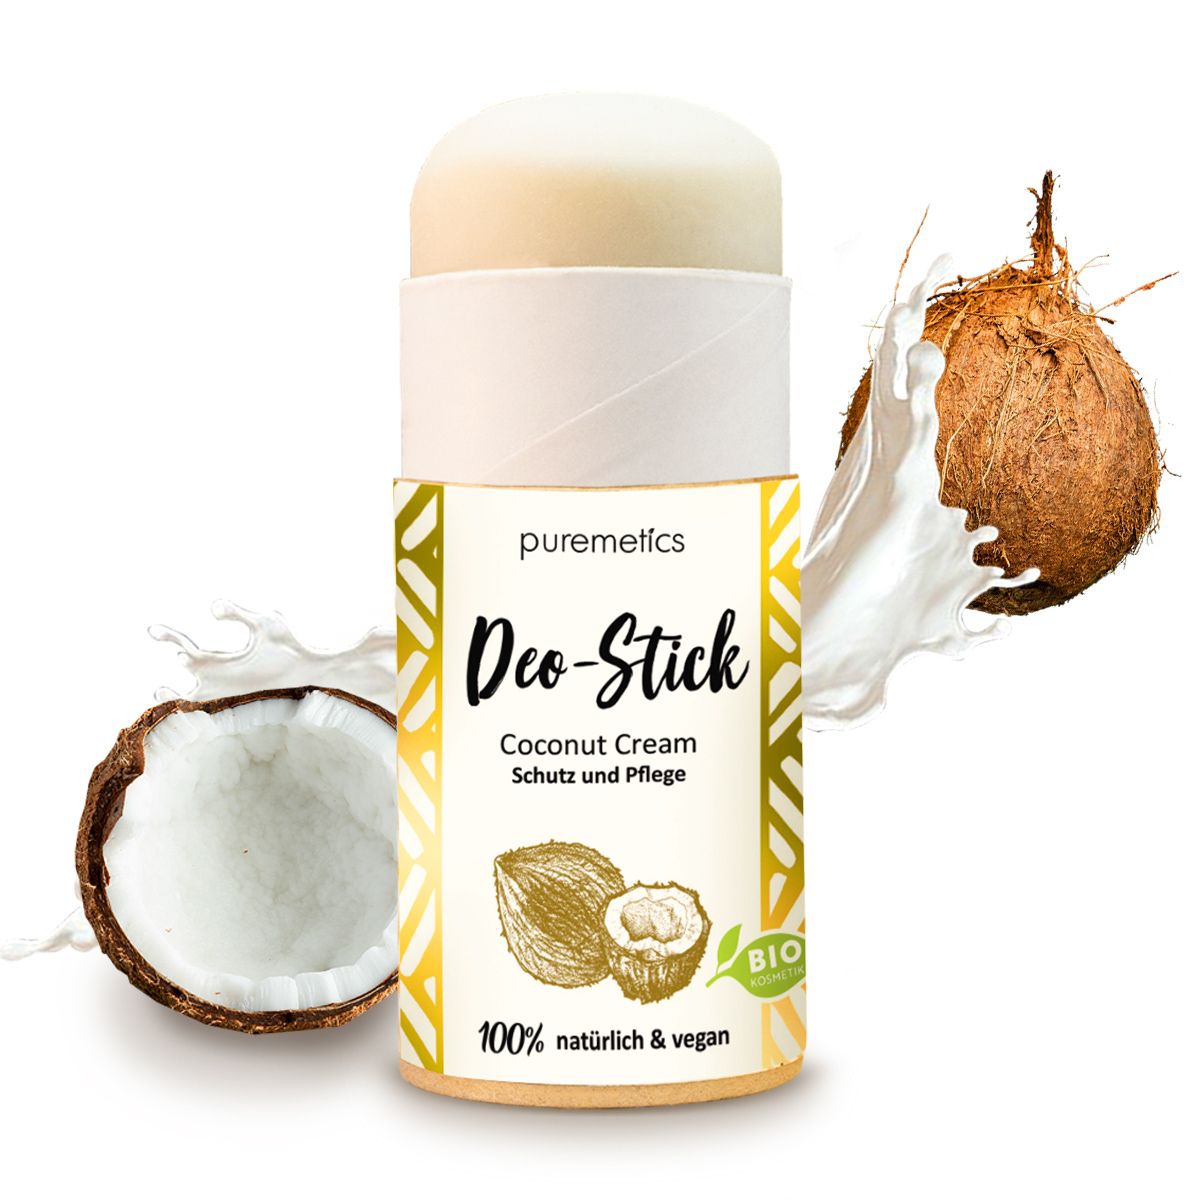 Deo-Stick Coconut Cream